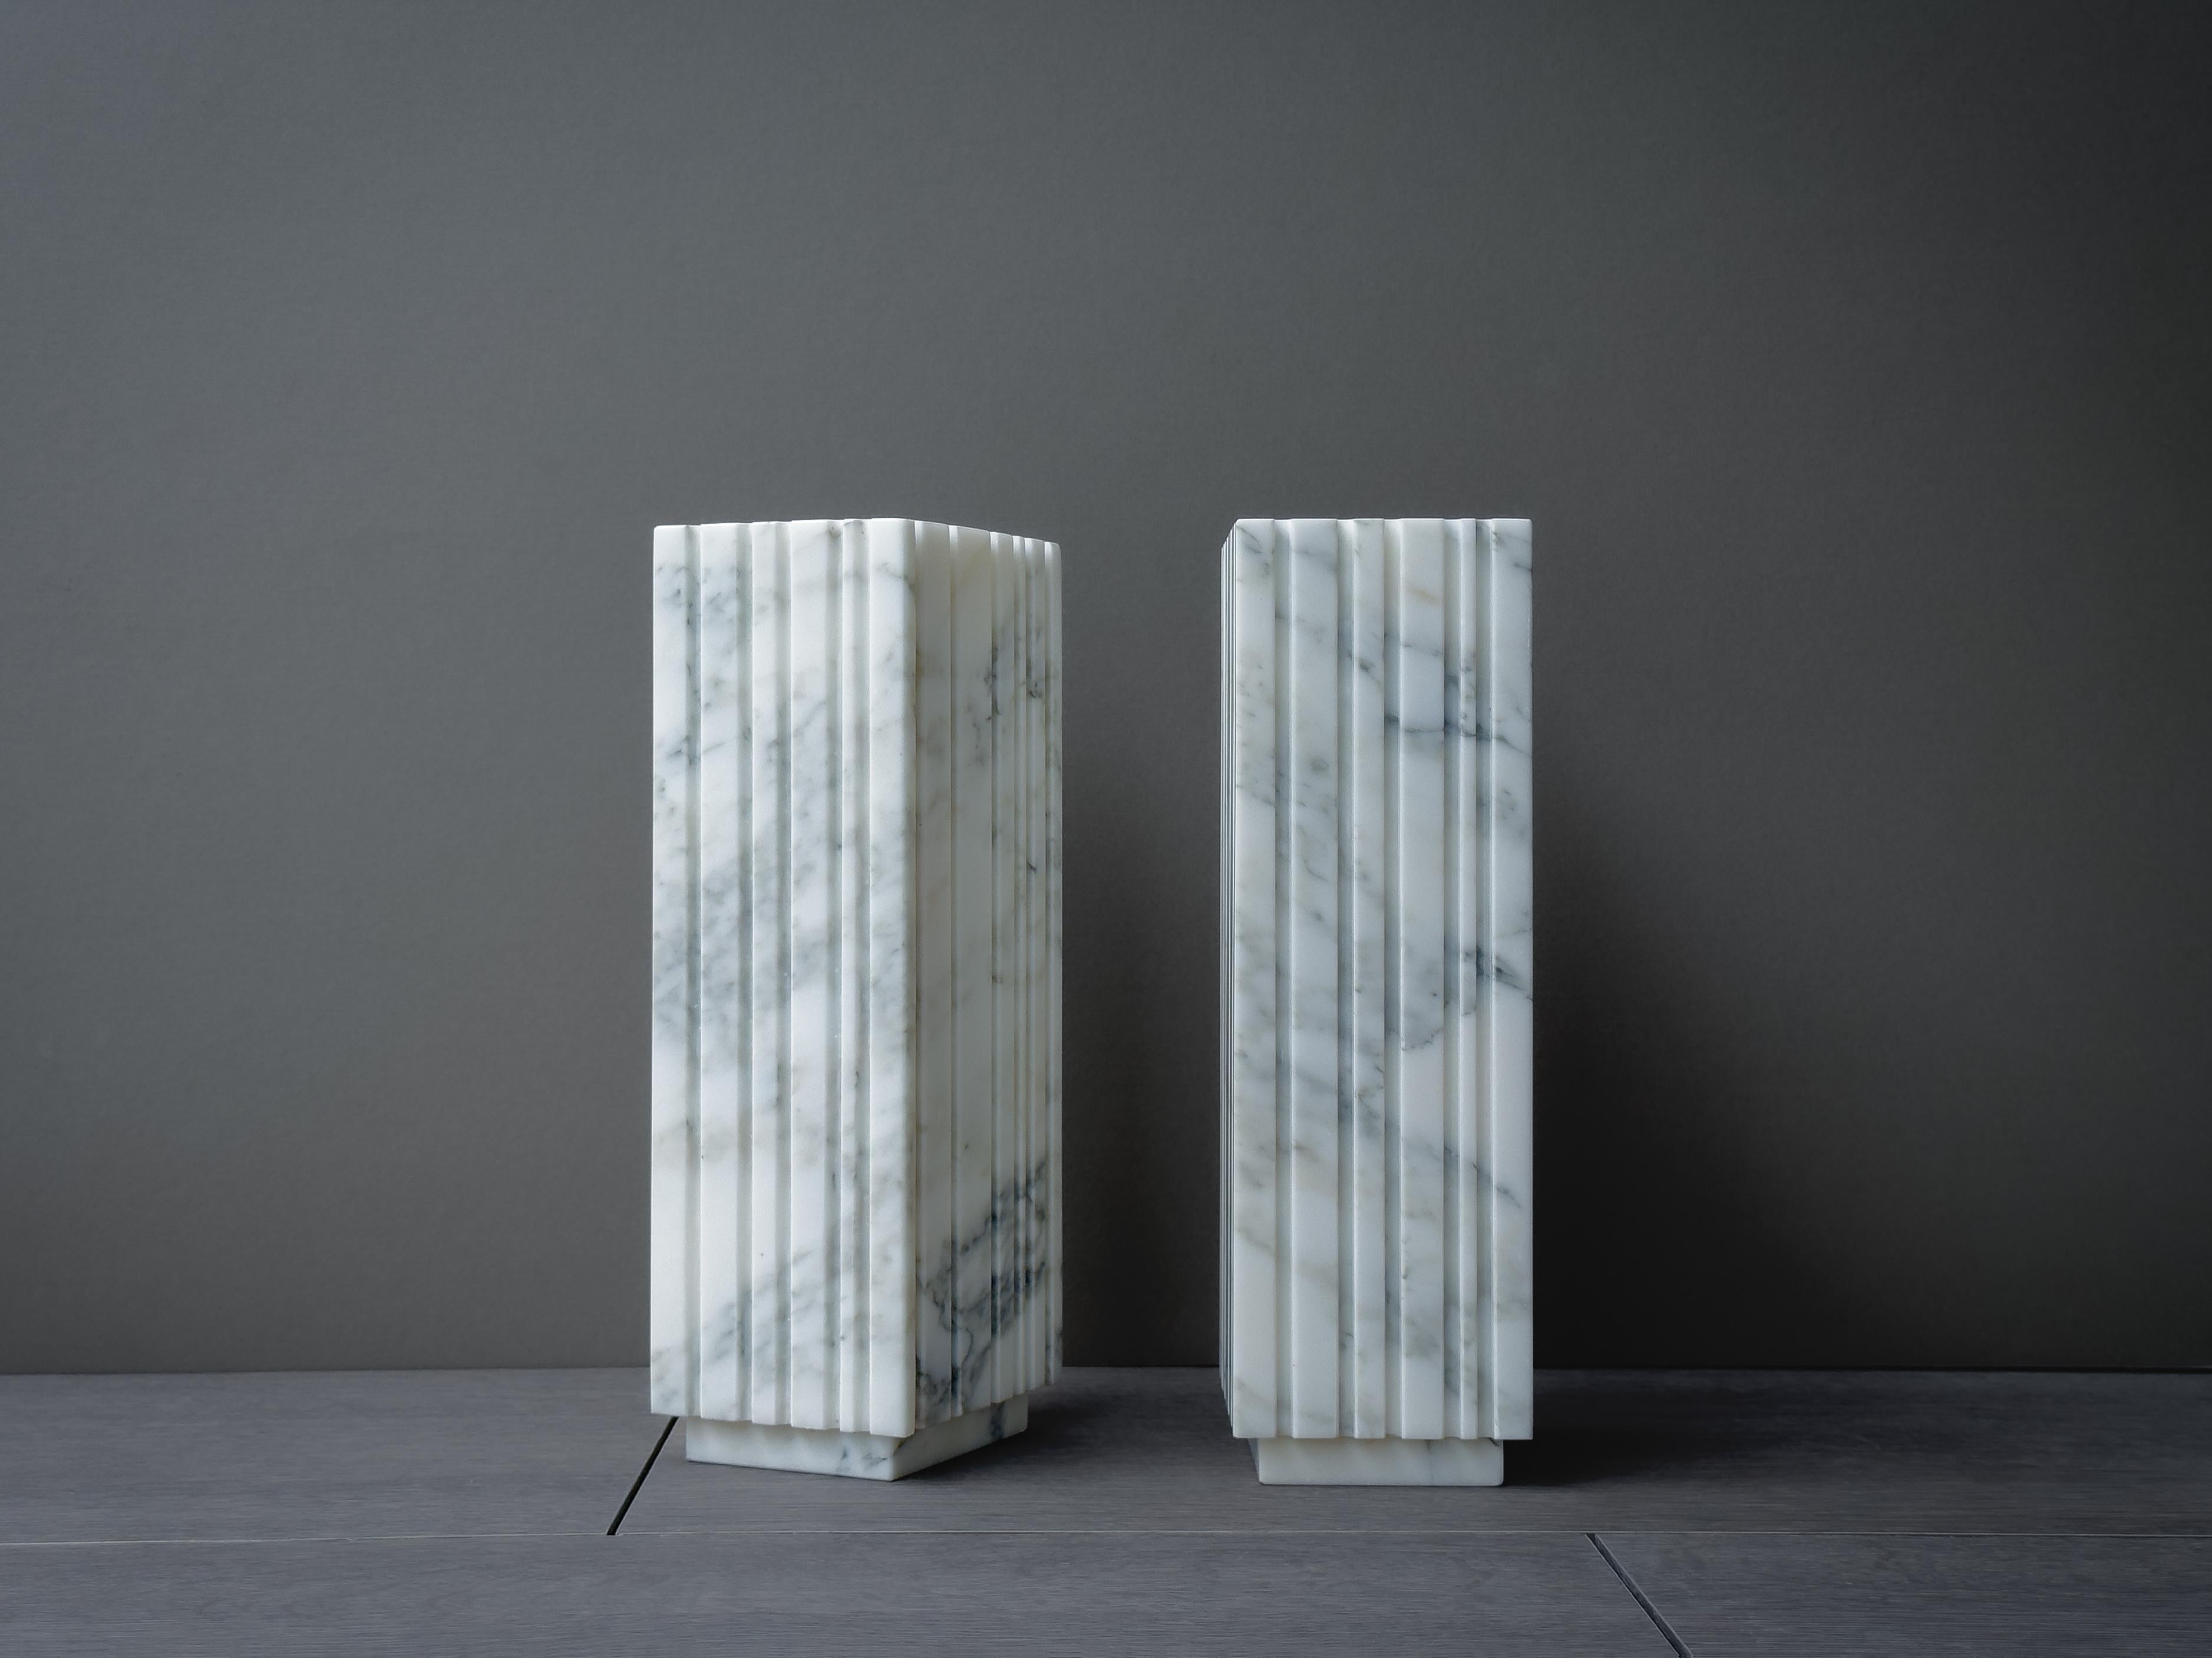 Le vase Bianco Groovy est un bloc rectiligne fusionné avec des lignes et des ombres pour créer un objet intemporel et élégant. Fabriqué en marbre Arabescato.

 
*Le produit réel peut différer des photographies, le marbre étant un matériau